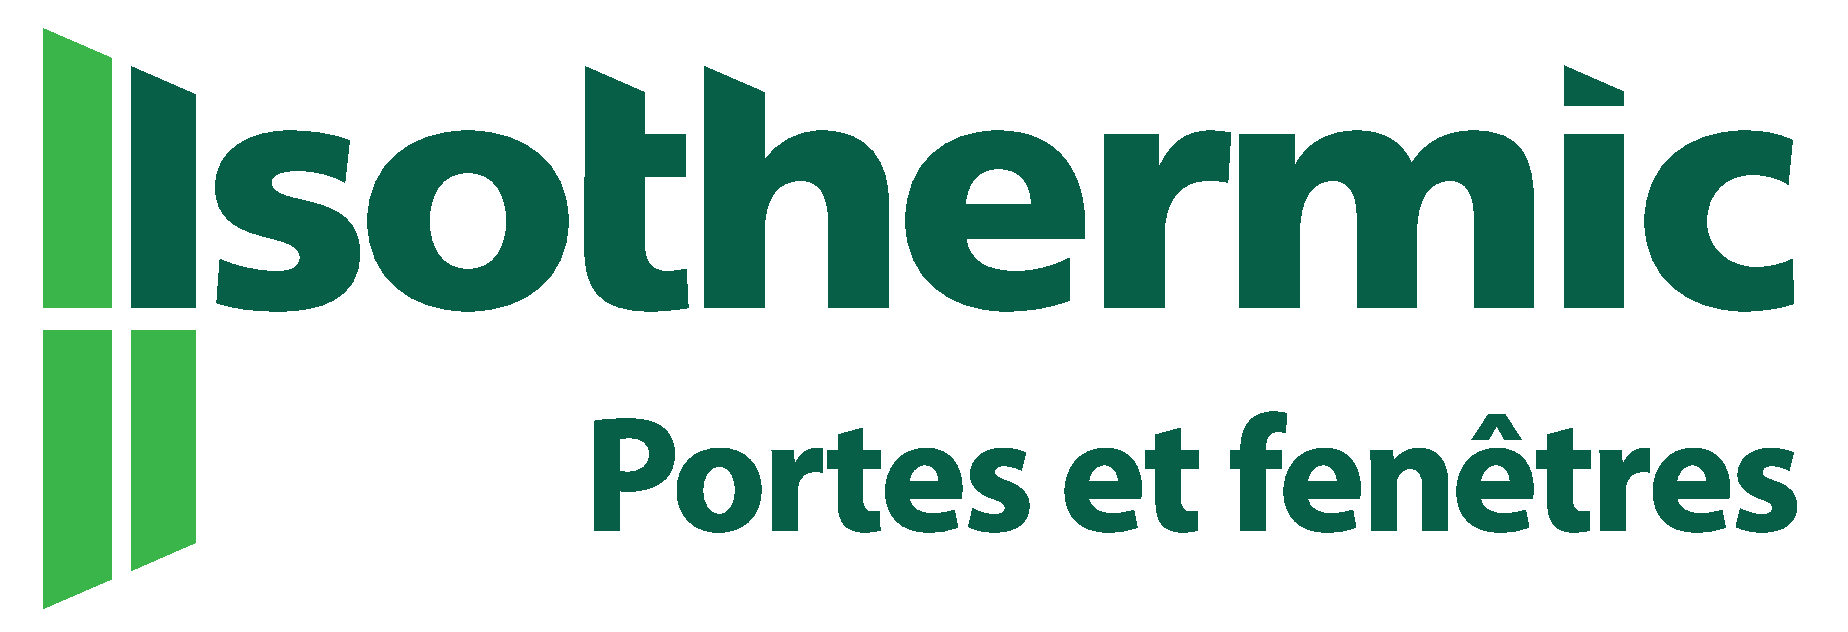 Partner Logo: Isothermic portes et fenêtres